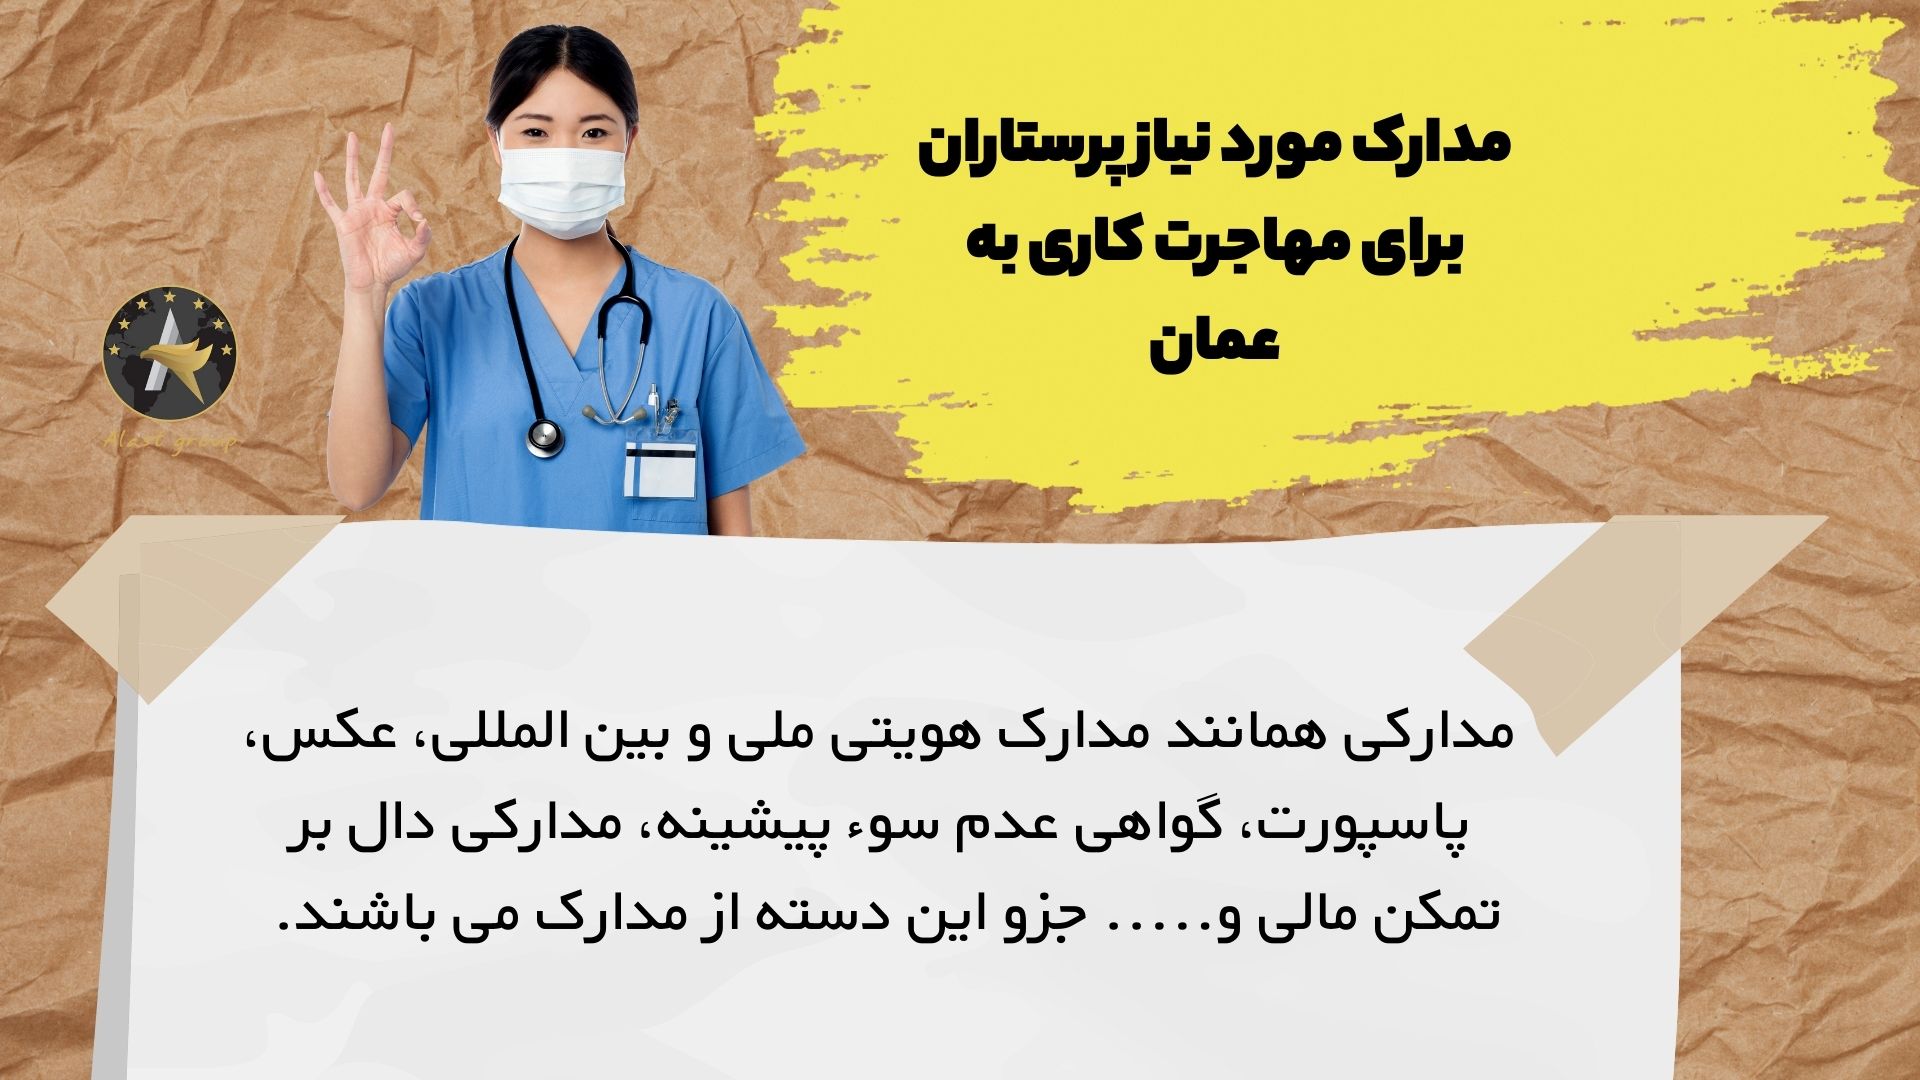 مدارک مورد نیاز پرستاران برای مهاجرت کاری به عمان